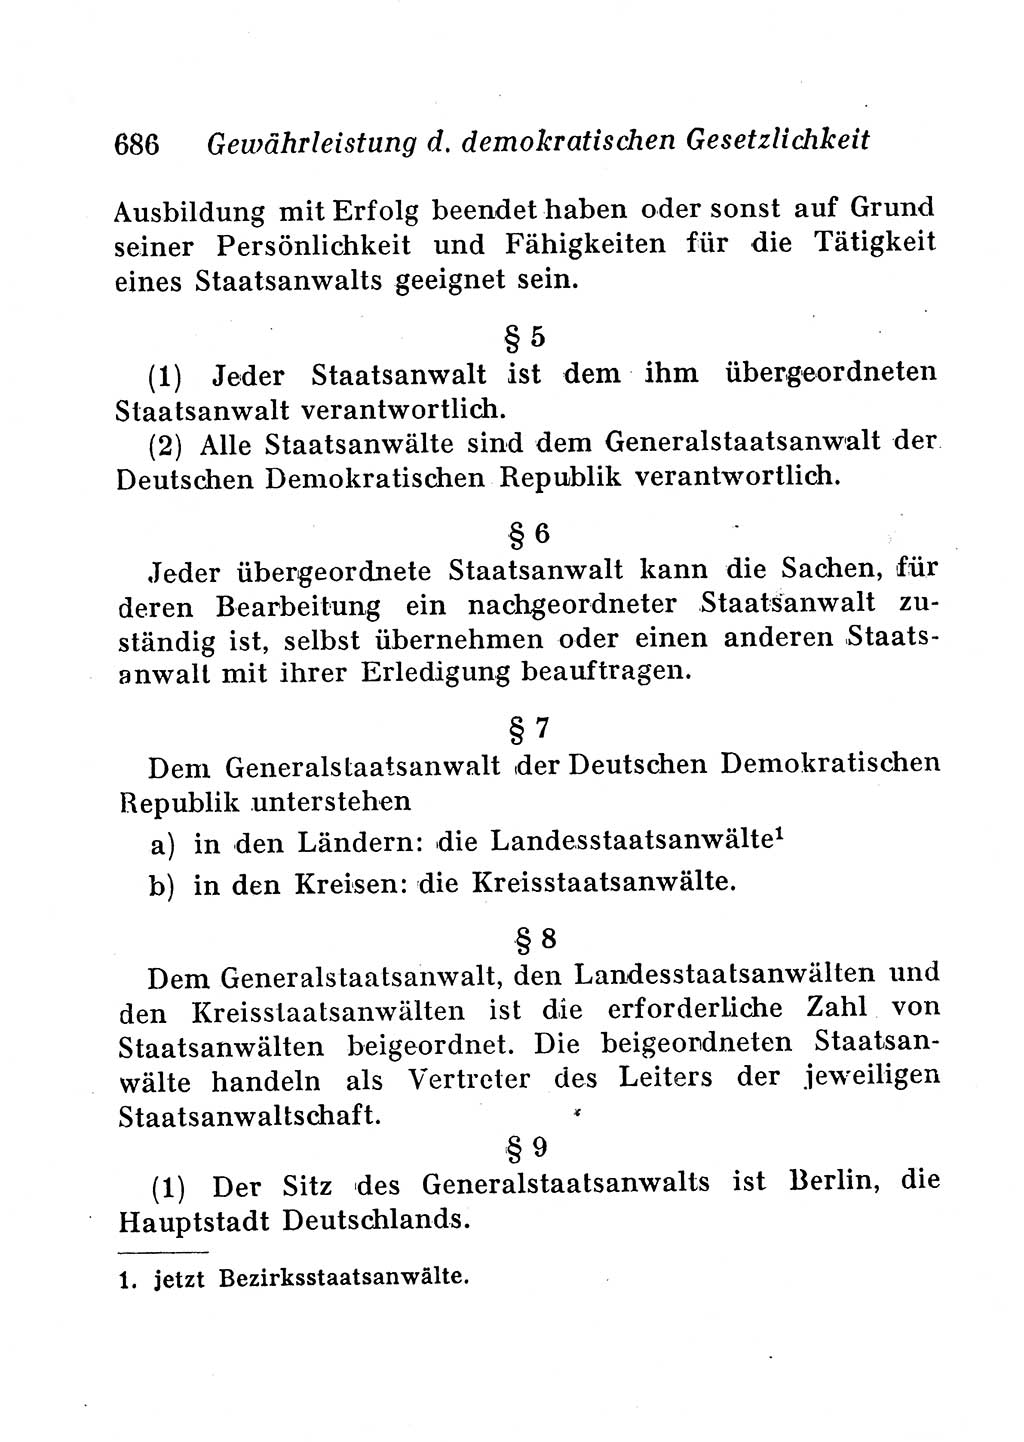 Staats- und verwaltungsrechtliche Gesetze der Deutschen Demokratischen Republik (DDR) 1958, Seite 686 (StVerwR Ges. DDR 1958, S. 686)